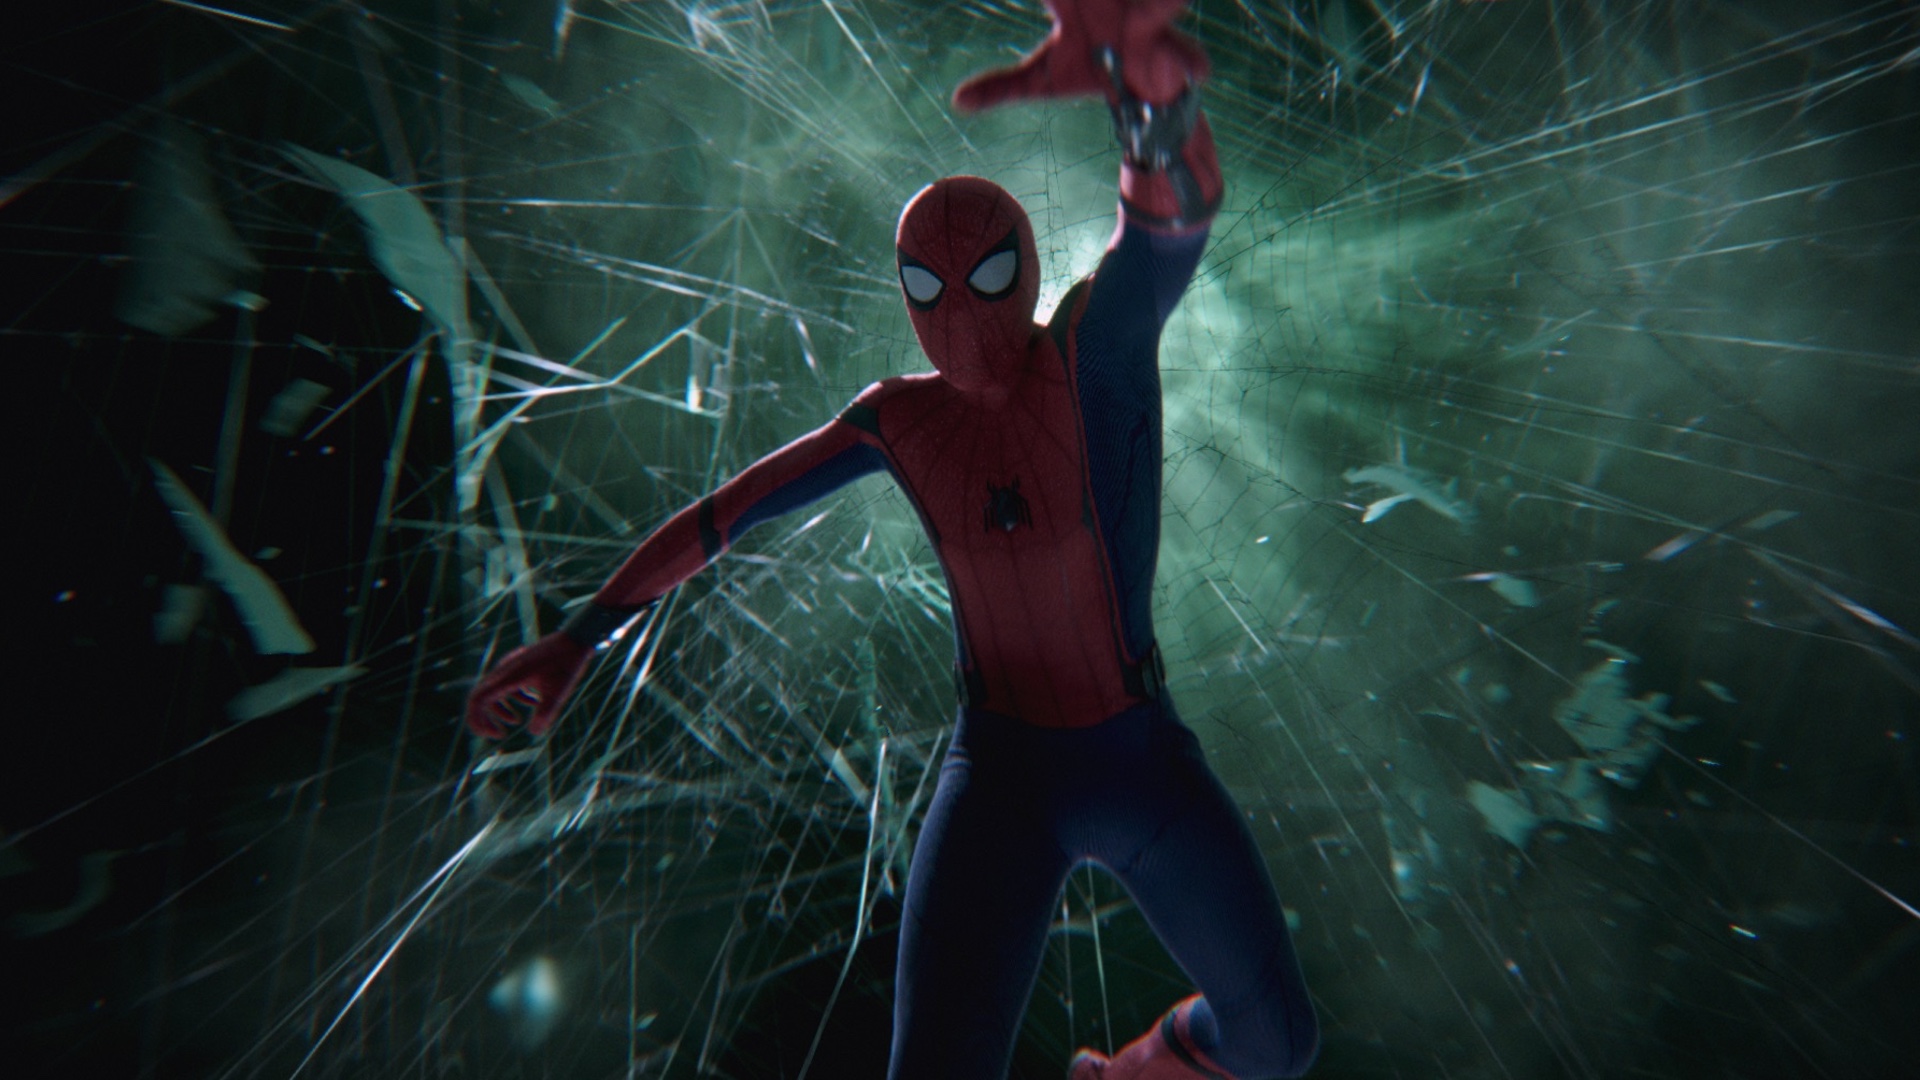 spiderman far from home alternate ending explained breakdown on the original peter parker identity reveal